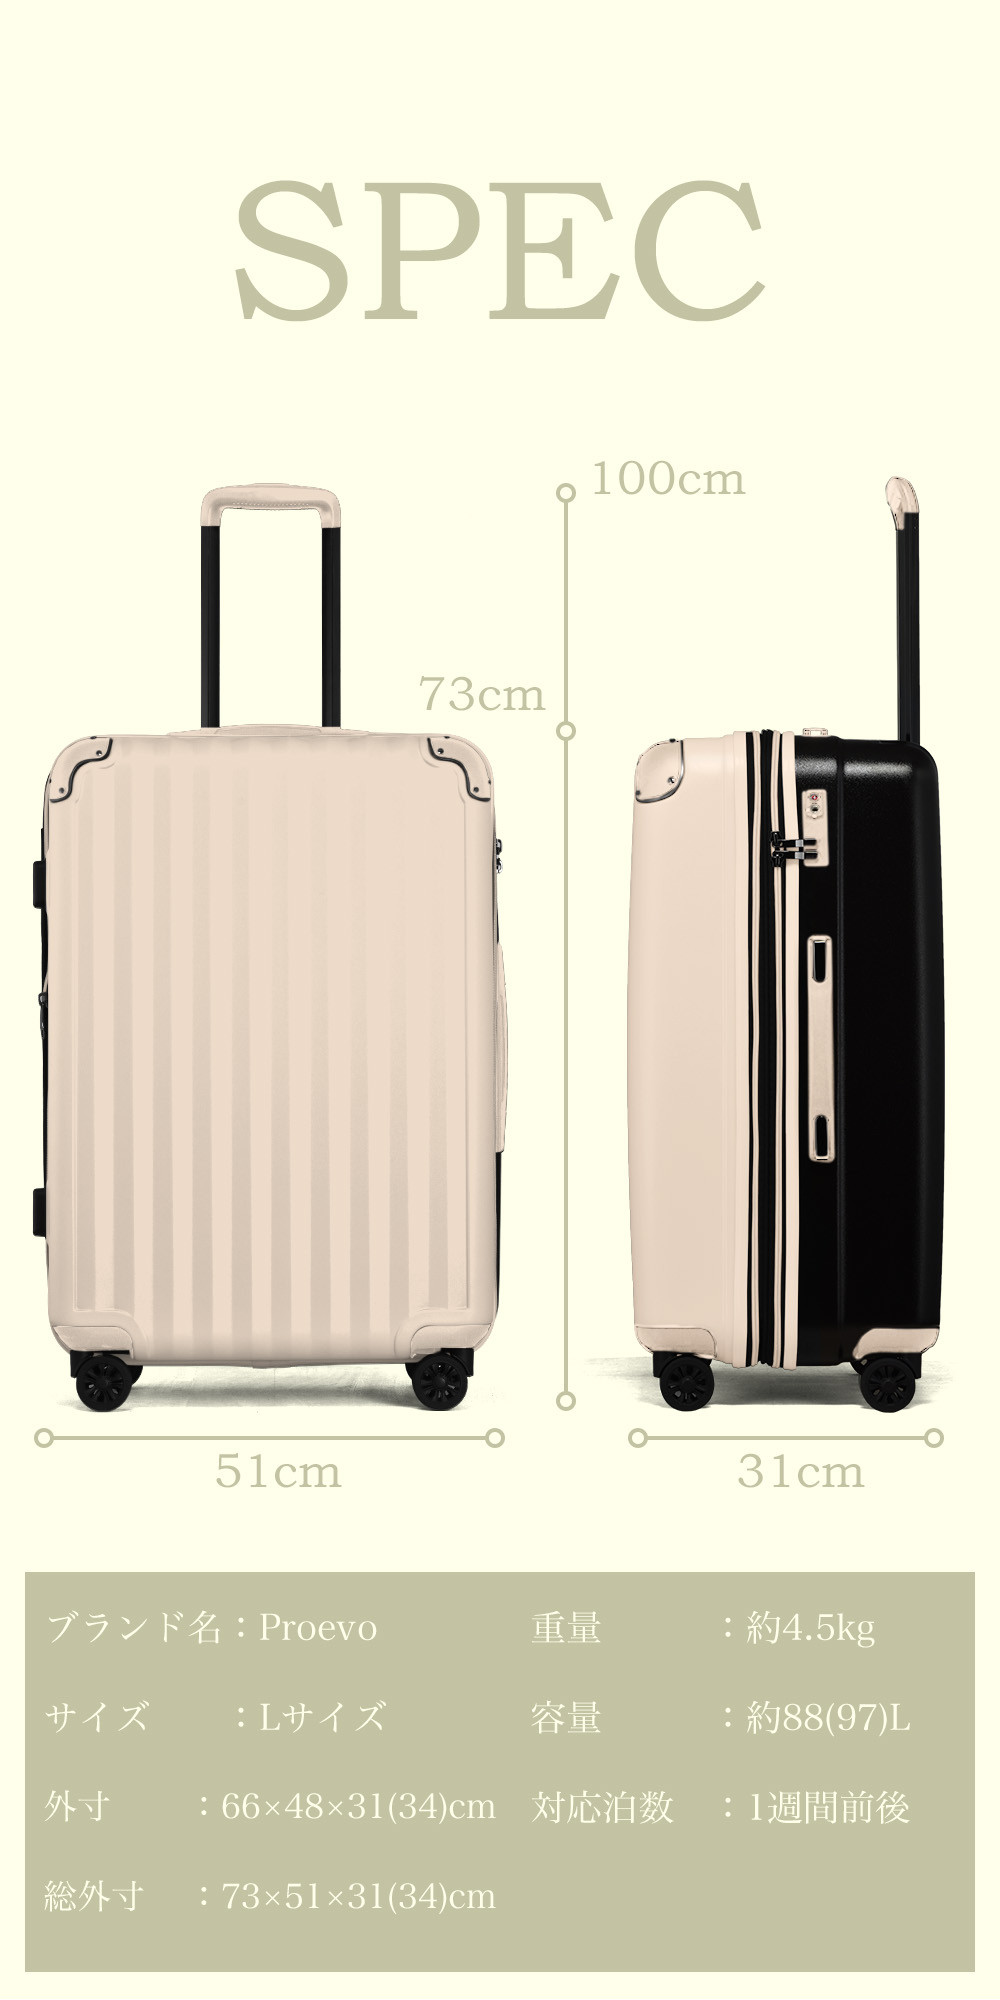 PROEVO] ファスナーキャリー スーツケース 受託手荷物対応 Lサイズ